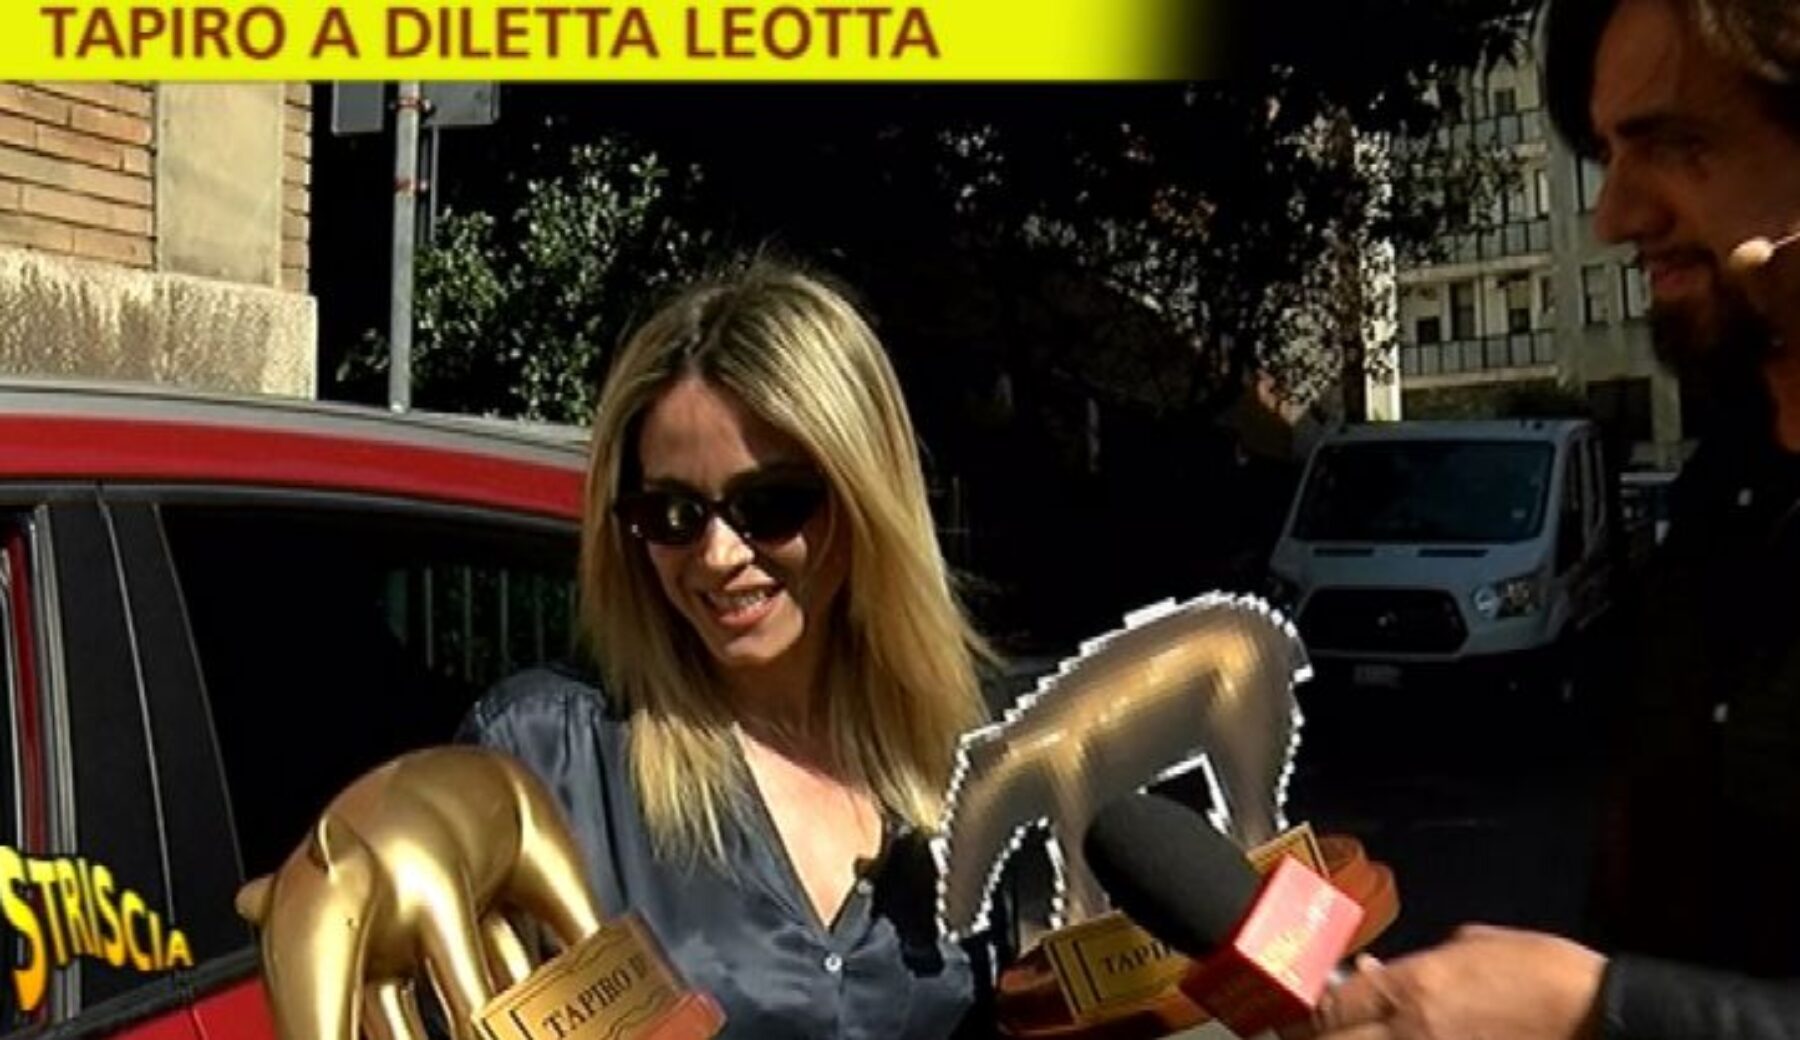 Diletta Leotta “attapirata” per la multa a Dazn Italia